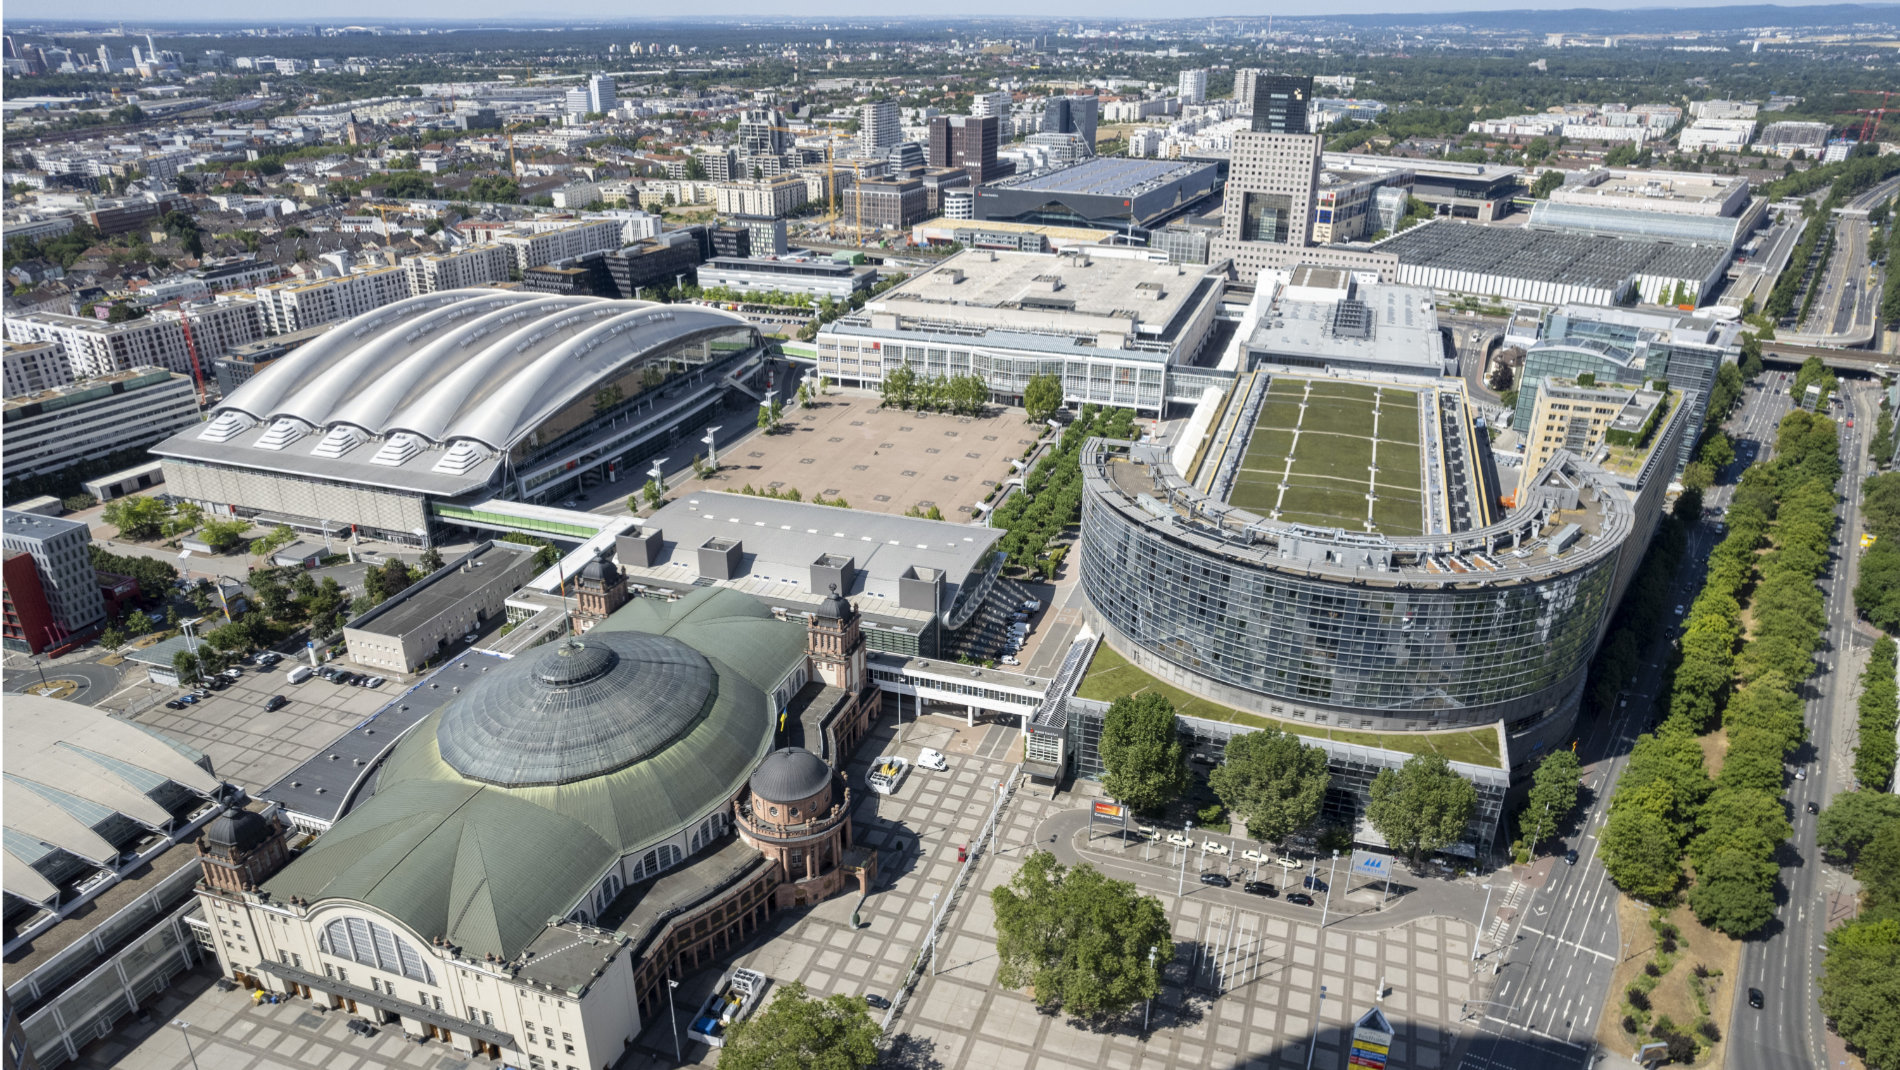 Messe Frankfurt – Terrain overview